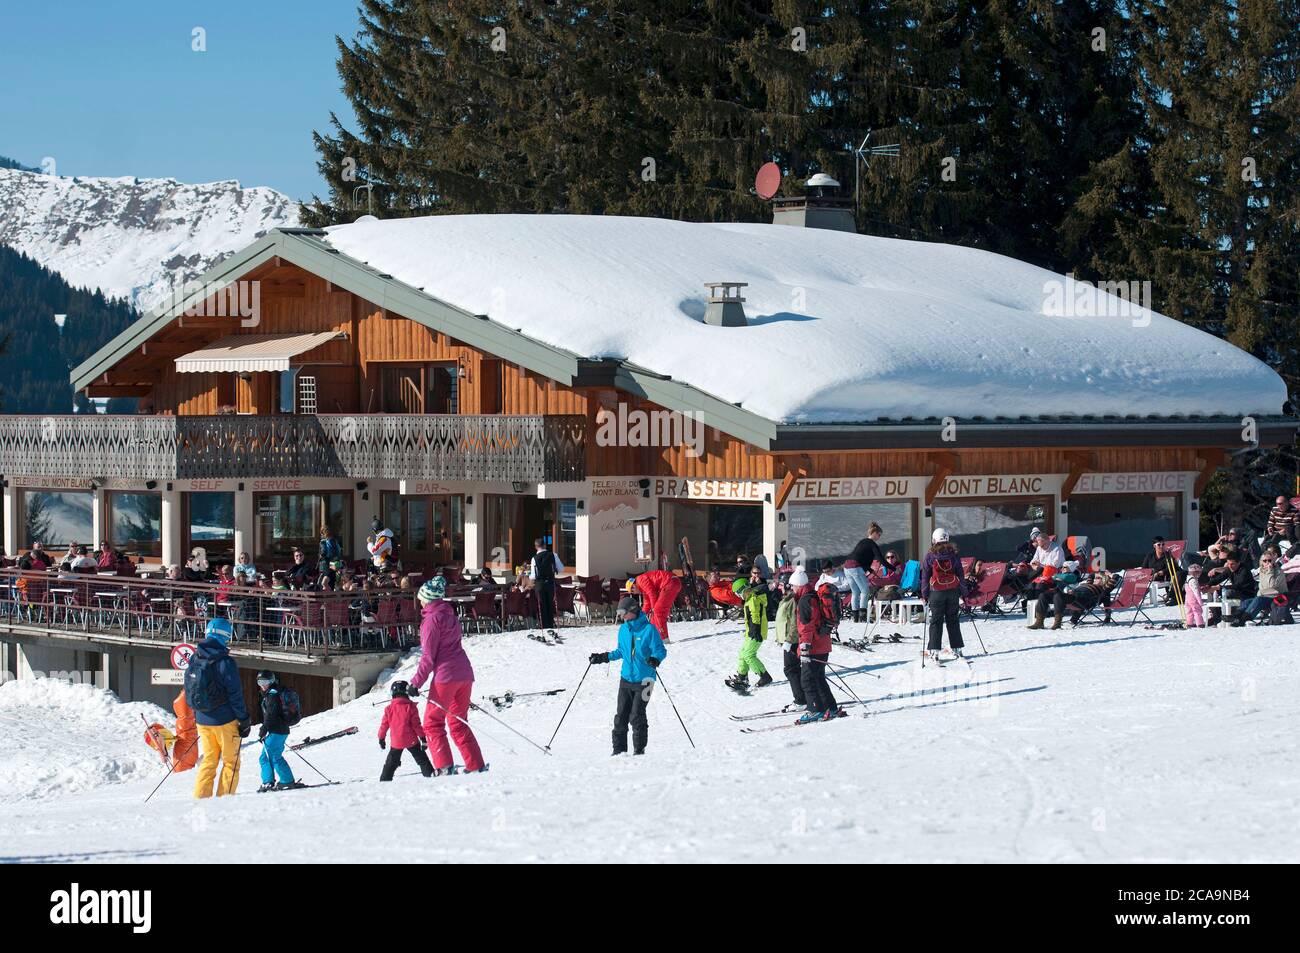 Das französische Skigebiet Les Gets in der Region Haute-Savoie im Südosten Frankreichs. Stockfoto